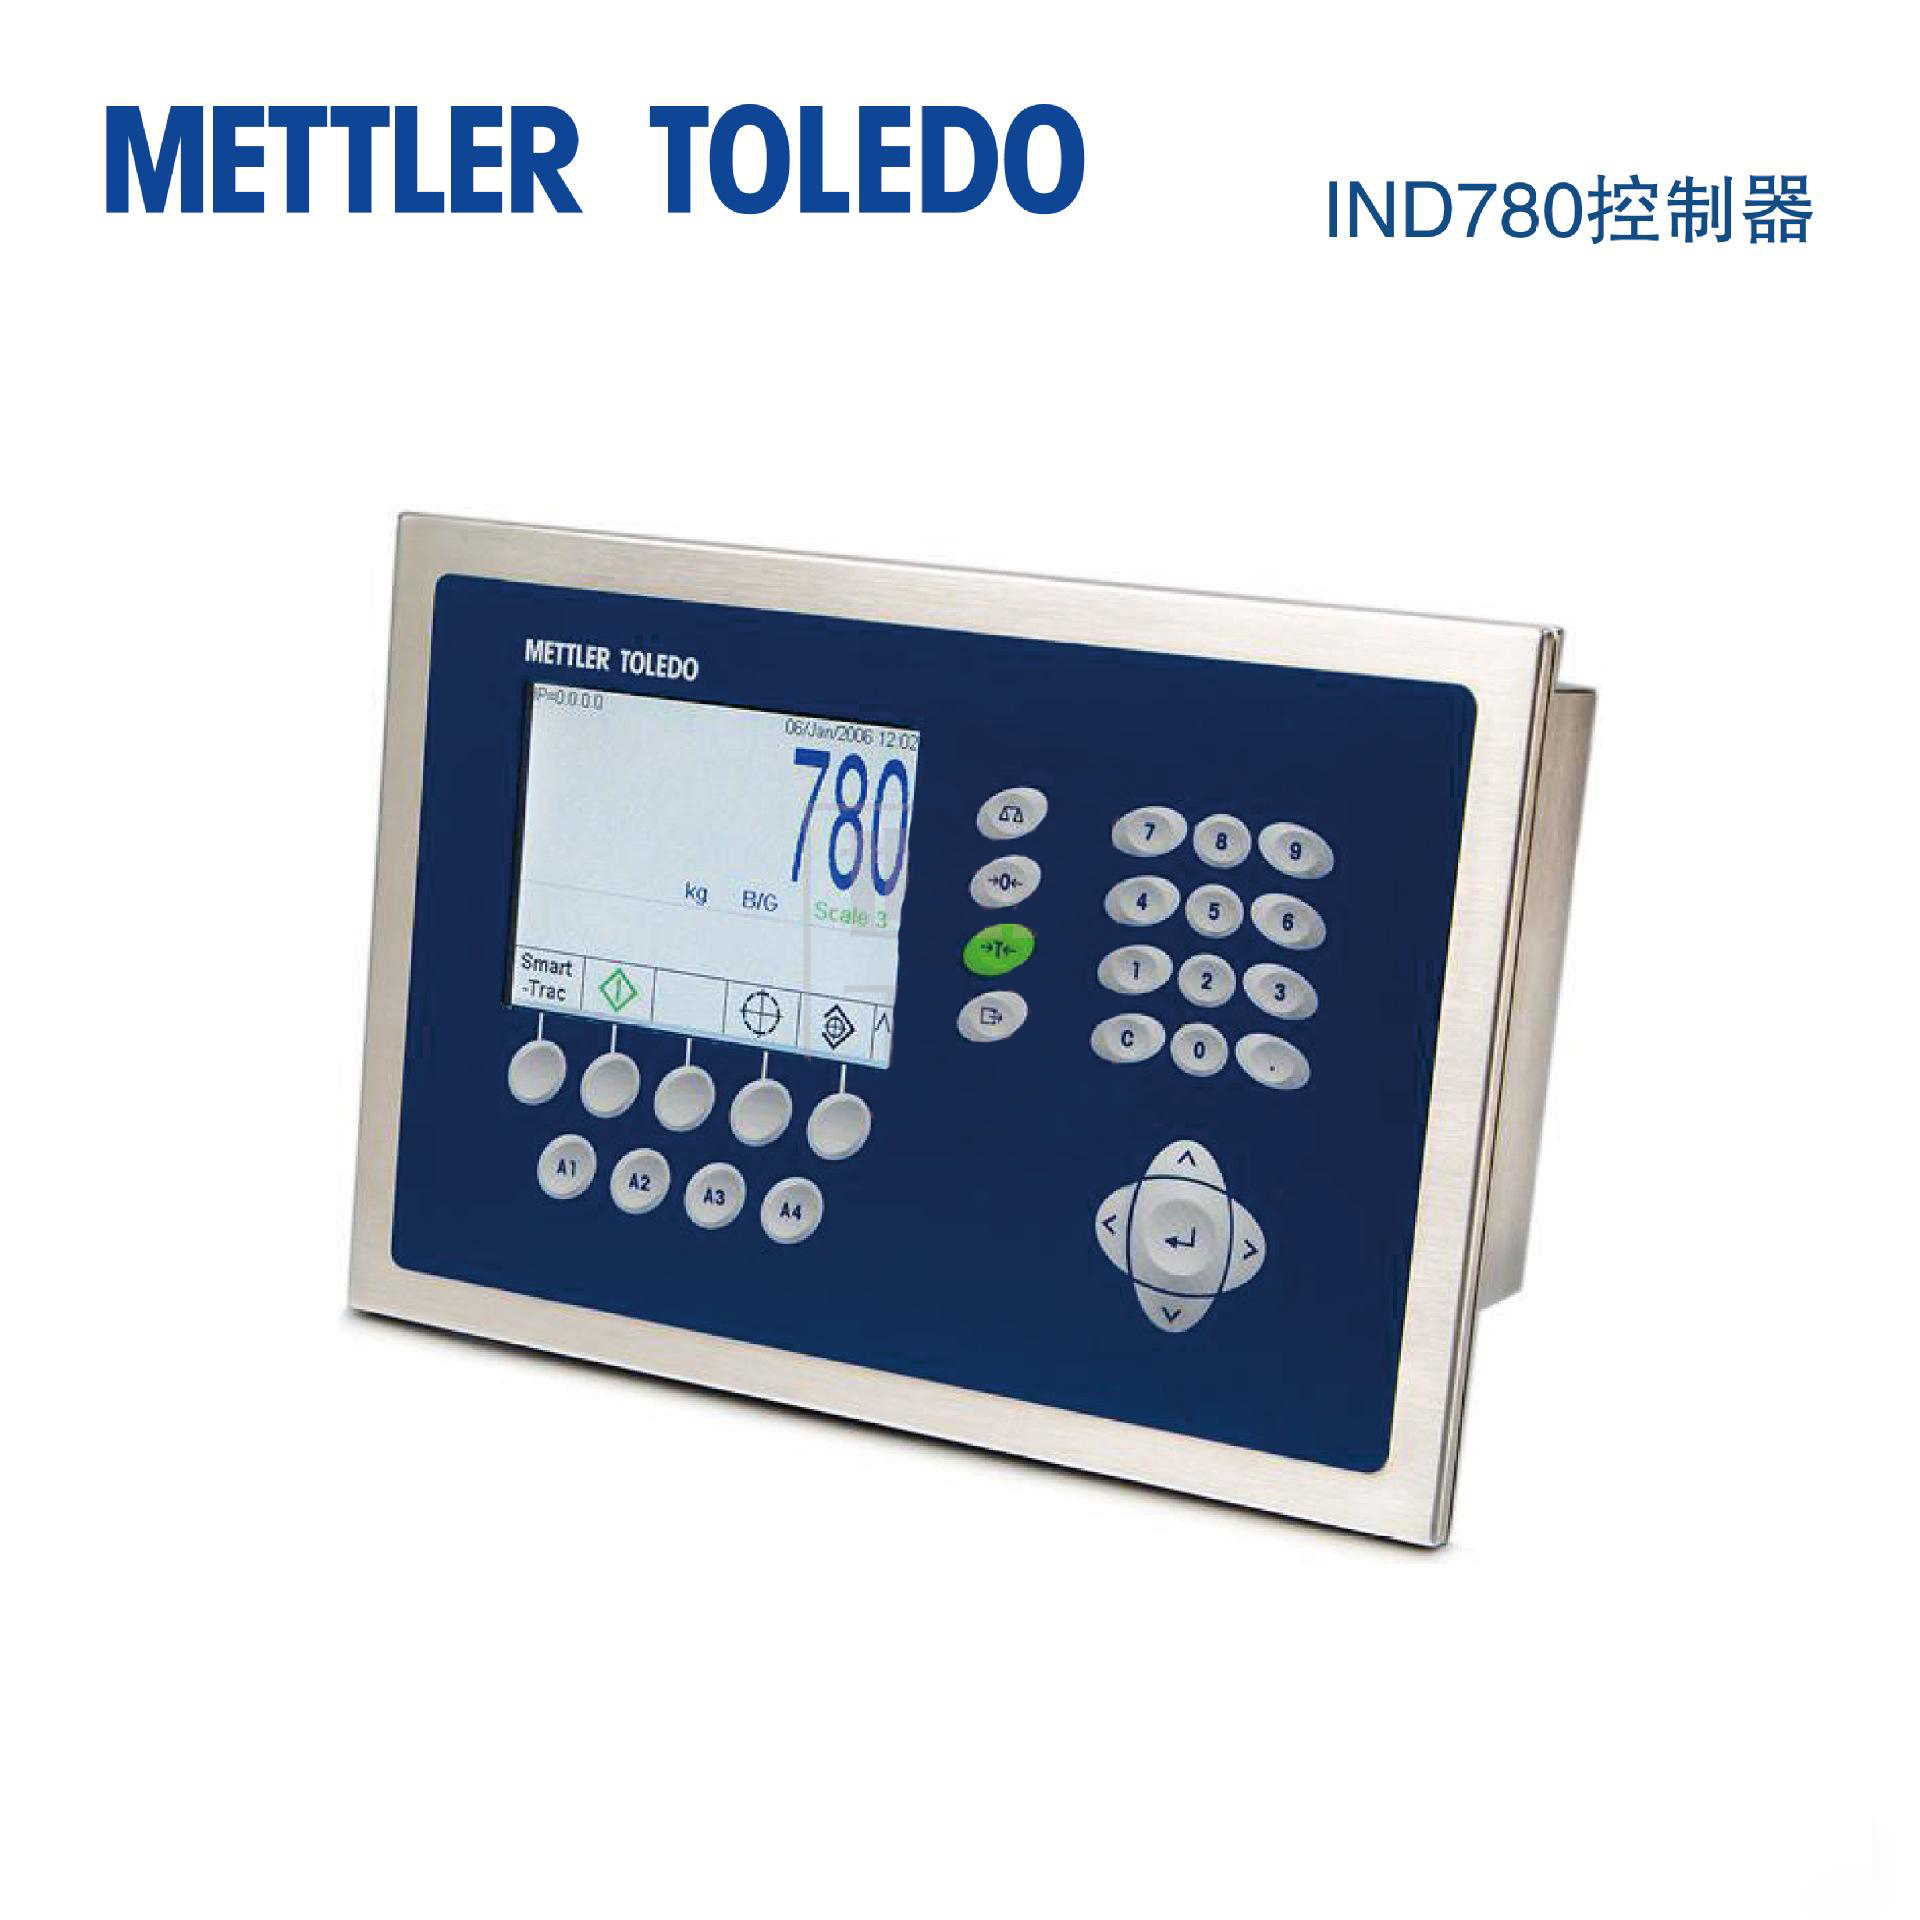 梅特勒-托利多METTLER TOLEDO IND780 高级称重终端